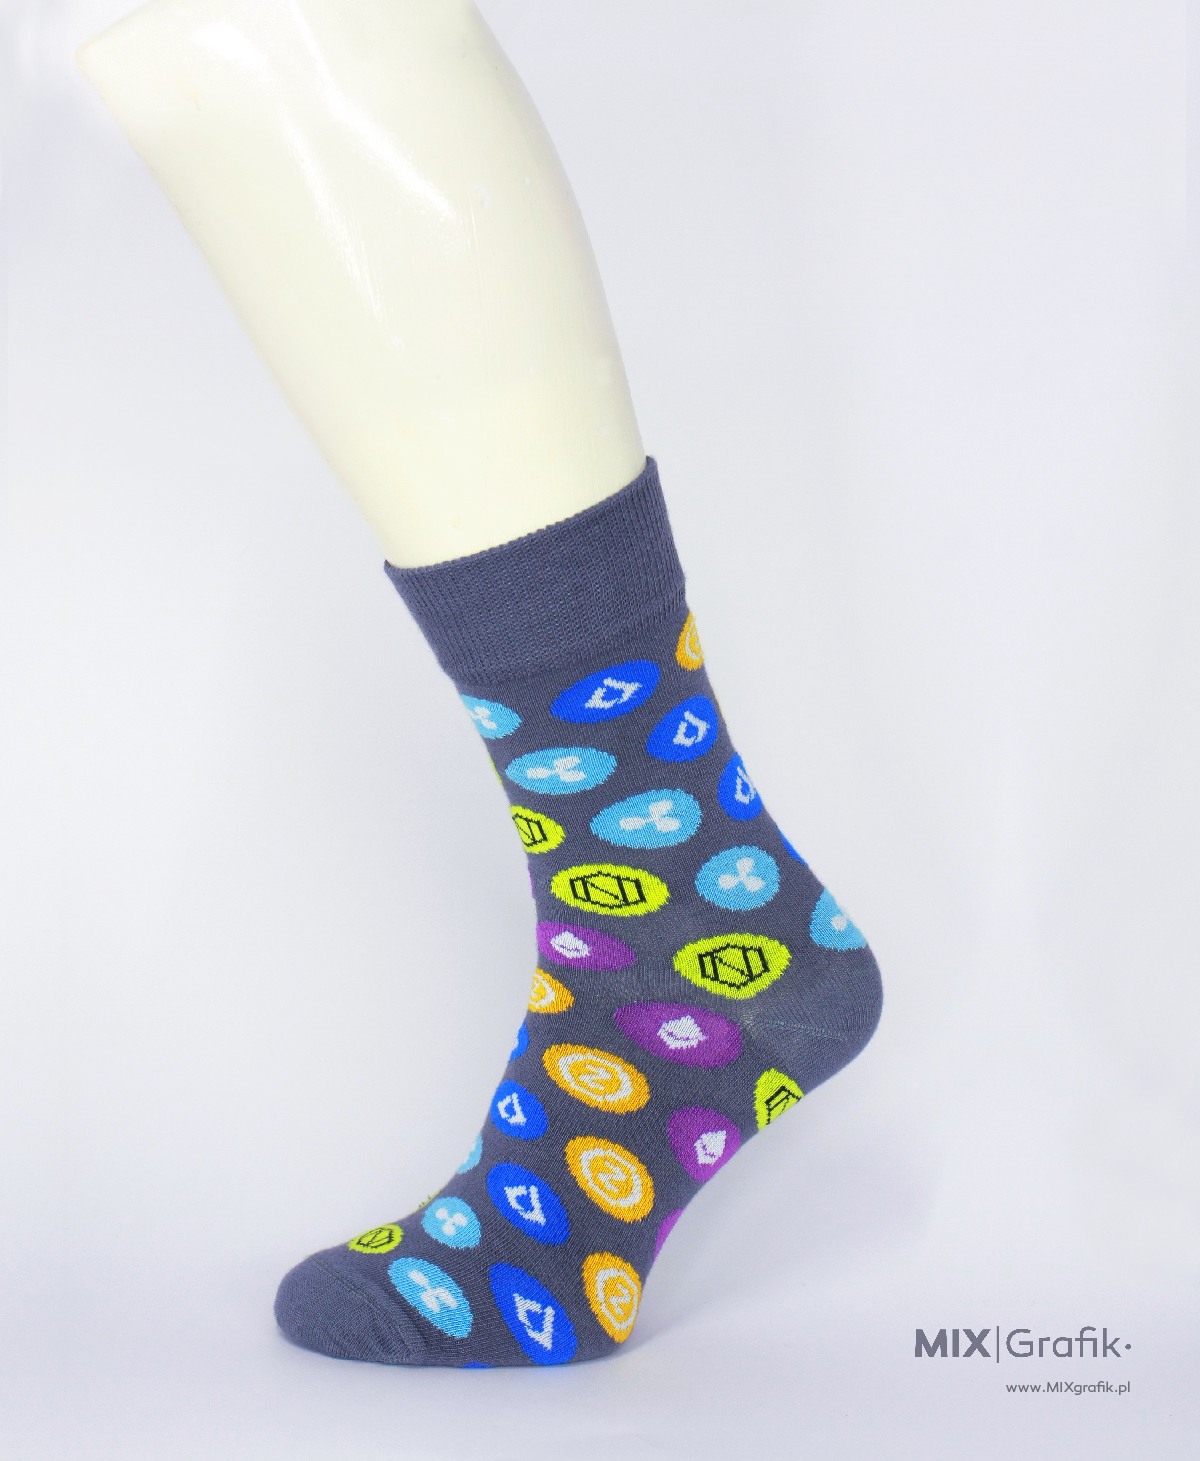 Skarpetki na zamówienie kryptowaluty bitcoin custom socks design 69